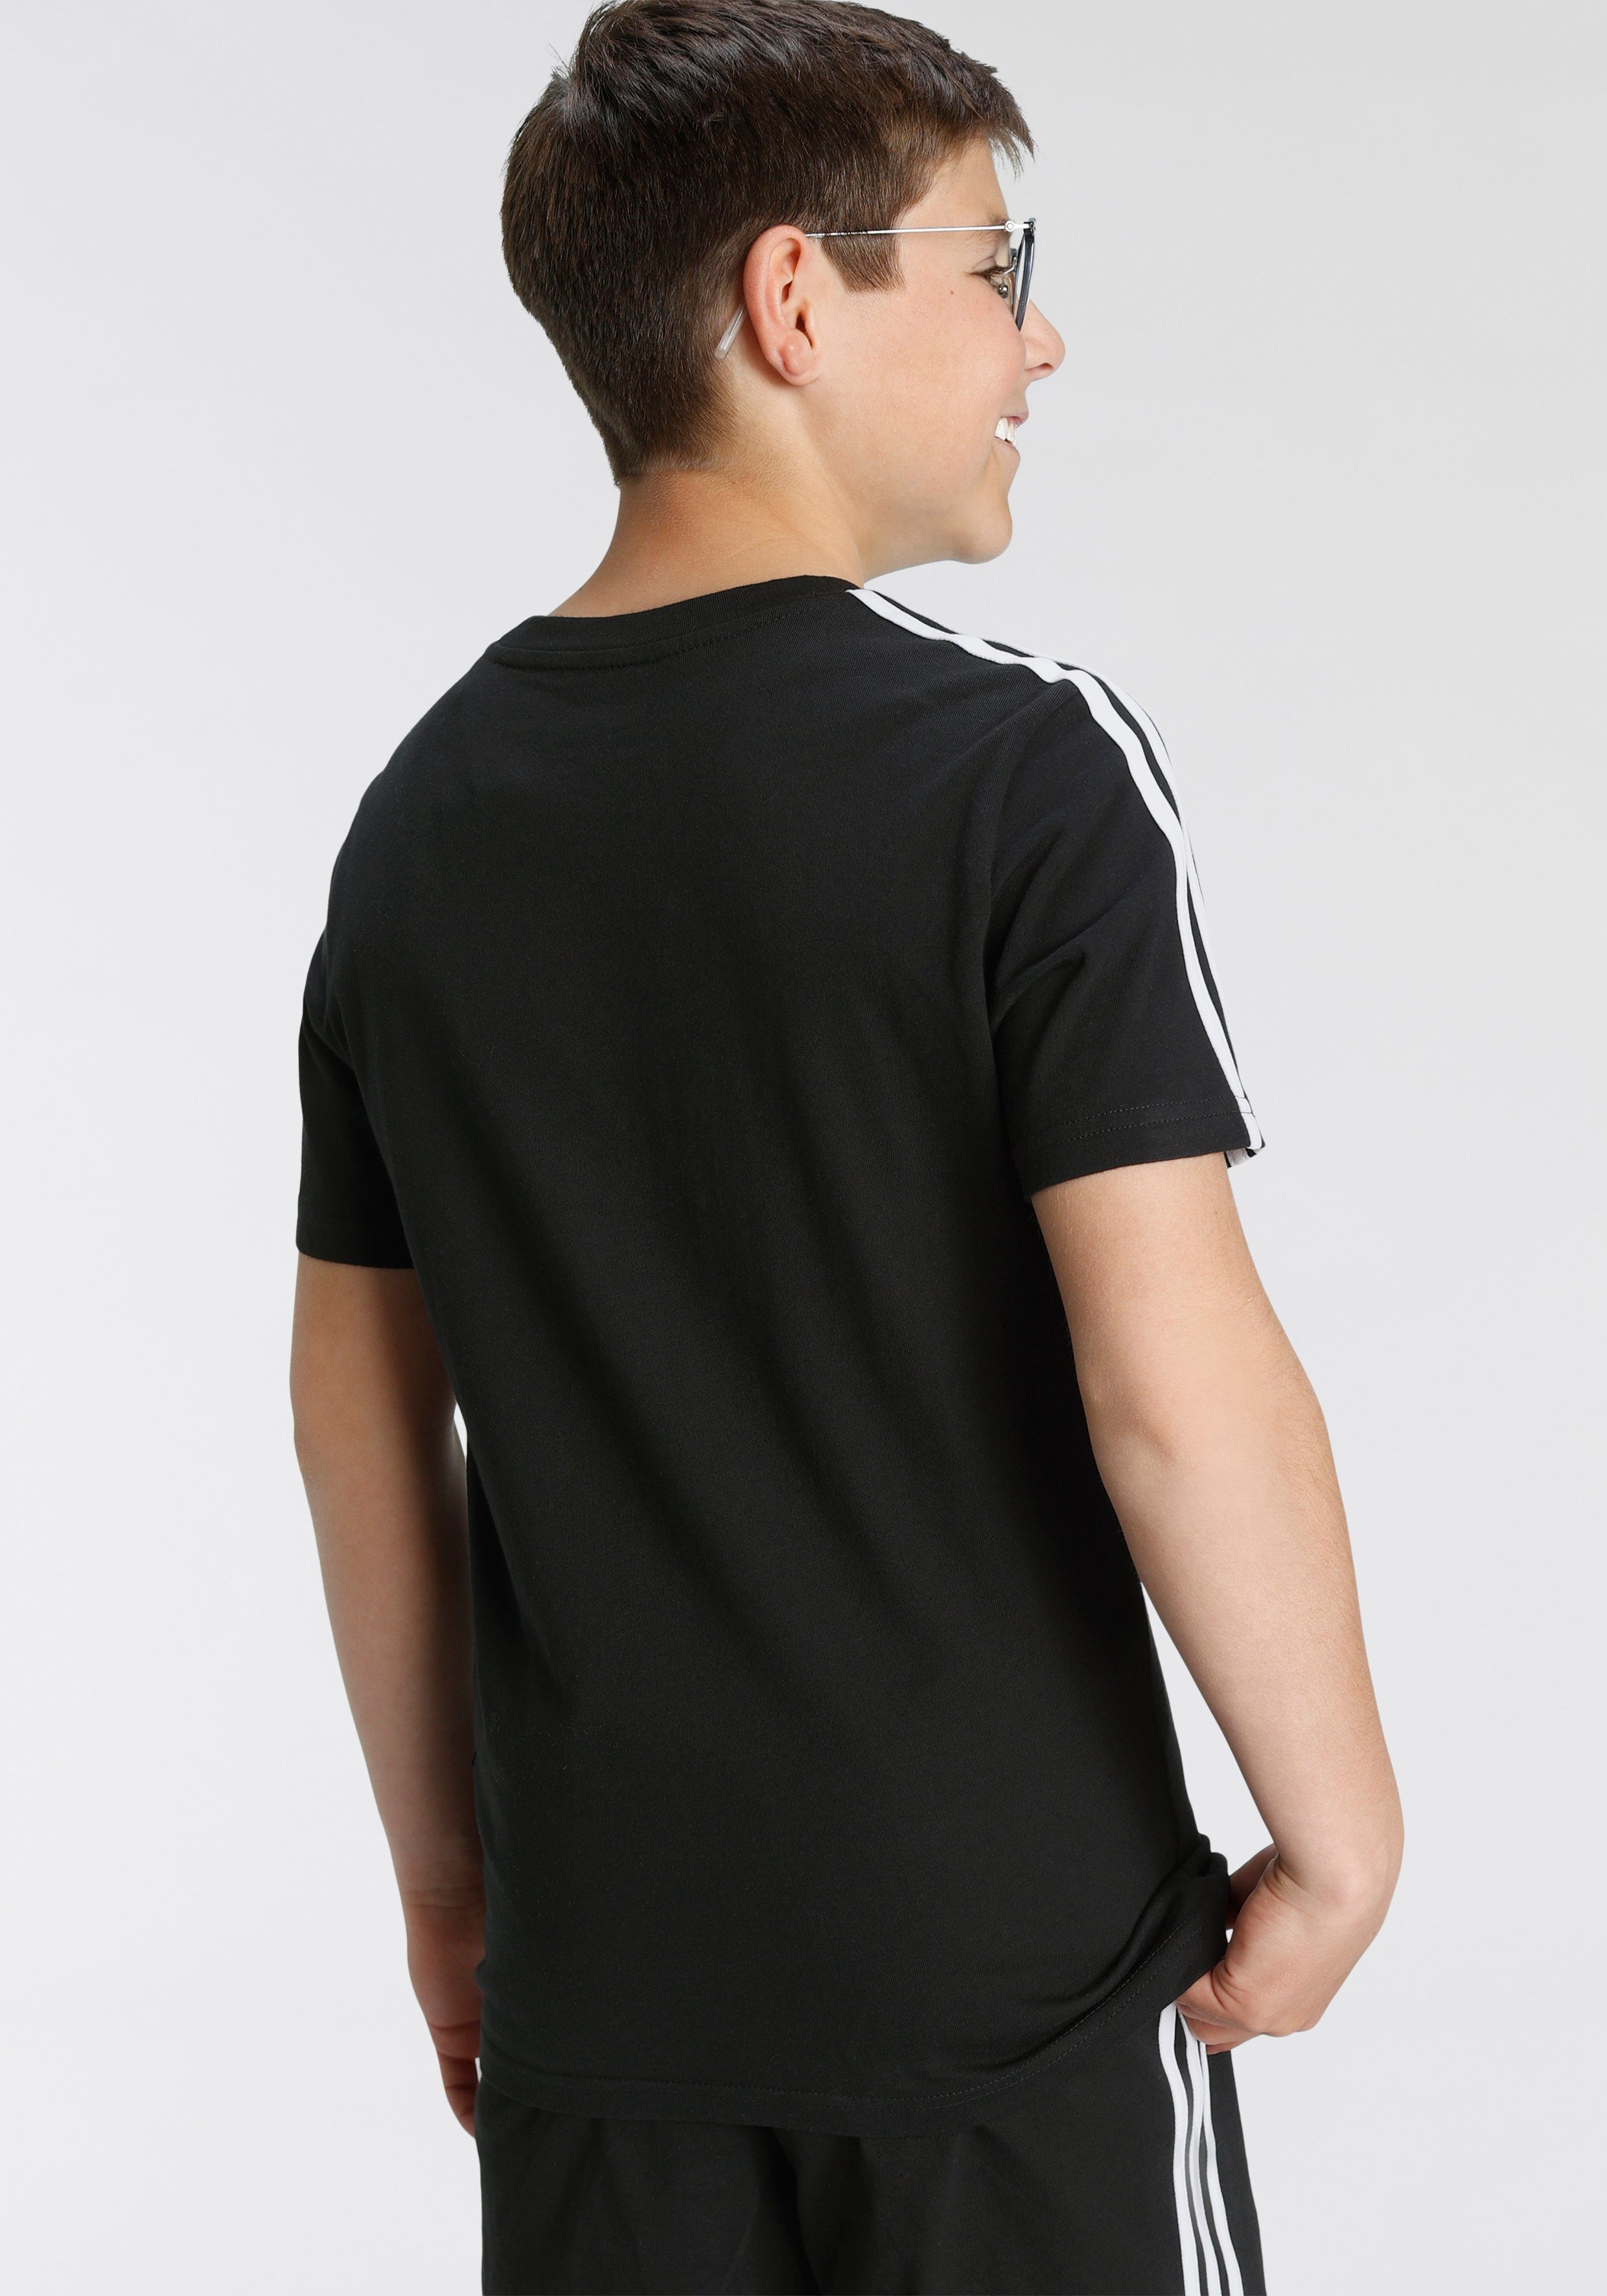 ESSENTIALS adidas ADIDAS Sportswear T-Shirt 3-STREIFEN